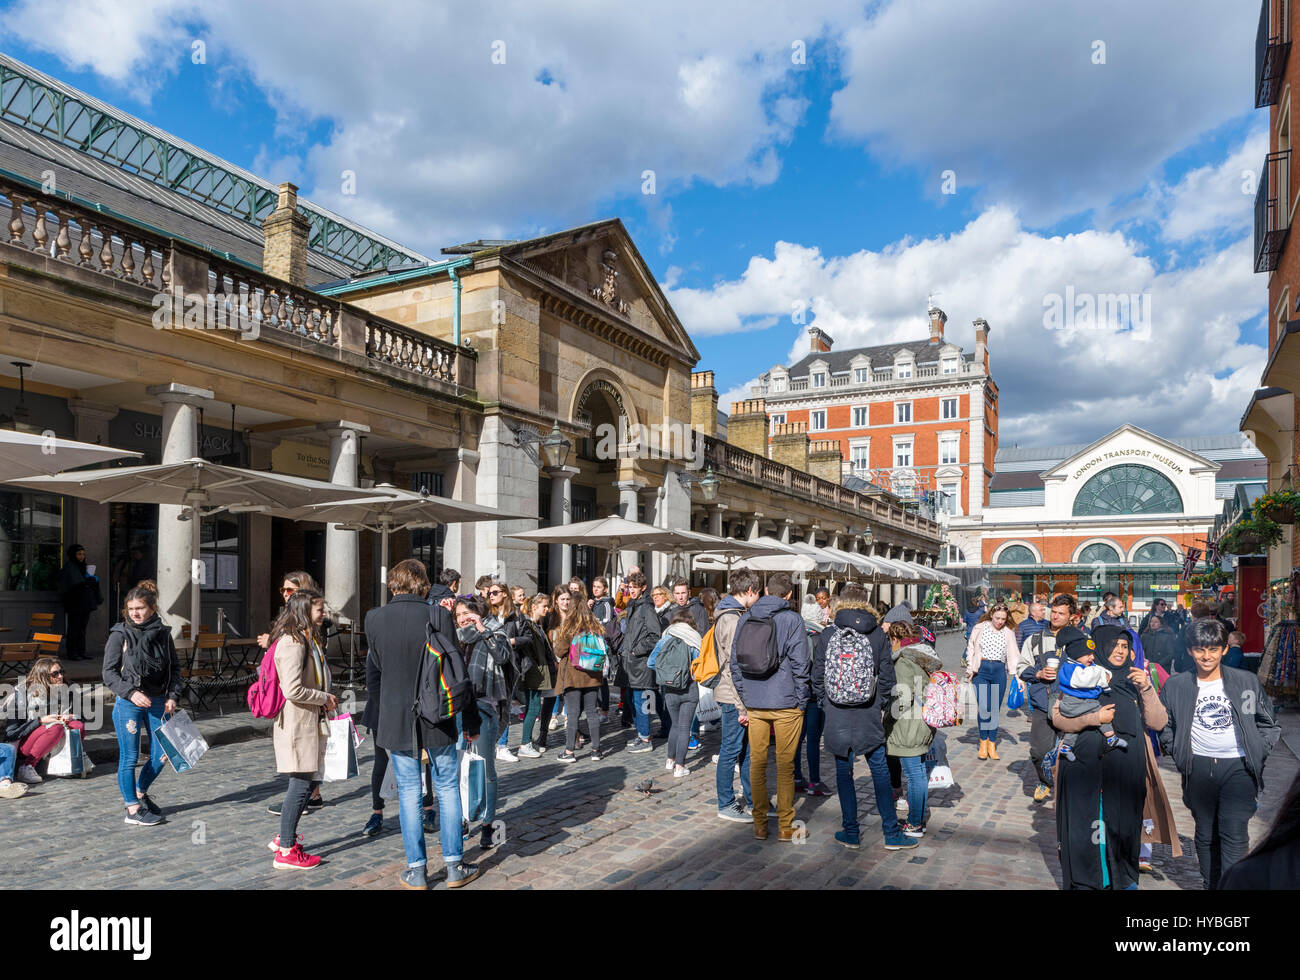 Il Covent Garden di Londra. La folla di turisti al di fuori del mercato di Covent Garden, nel West End di Londra, Inghilterra, Regno Unito Foto Stock